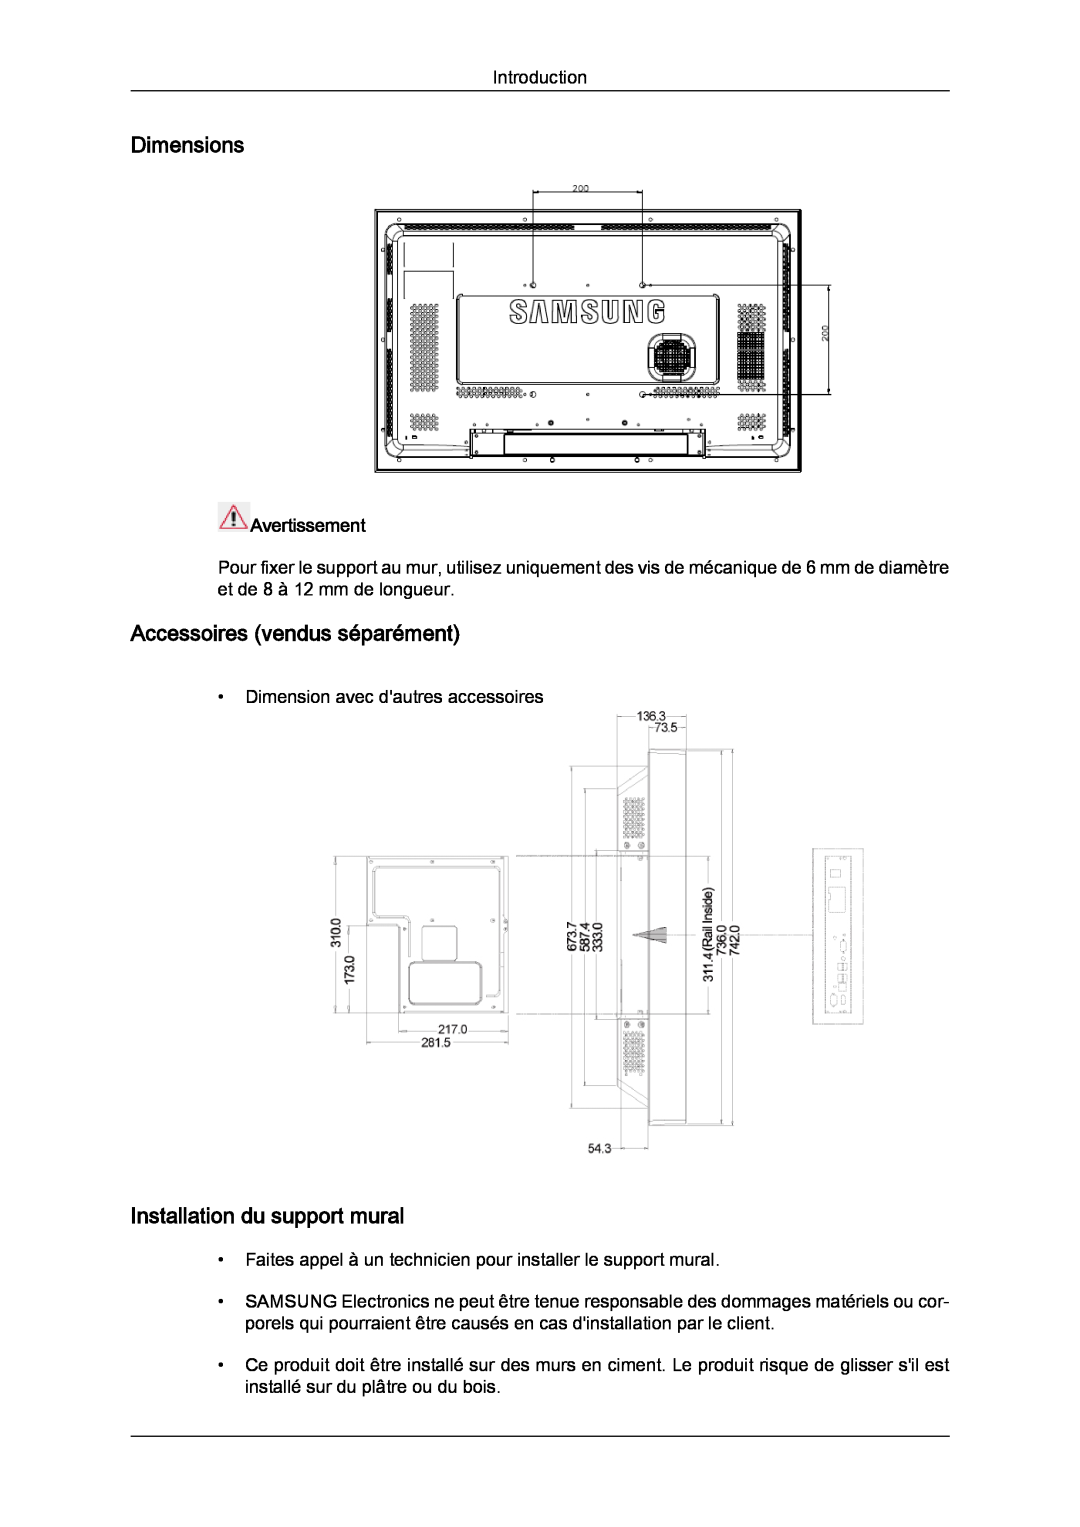 Samsung LH32CRTMBC/EN manual Dimensions, Accessoires vendus séparément, Installation du support mural, Avertissement 